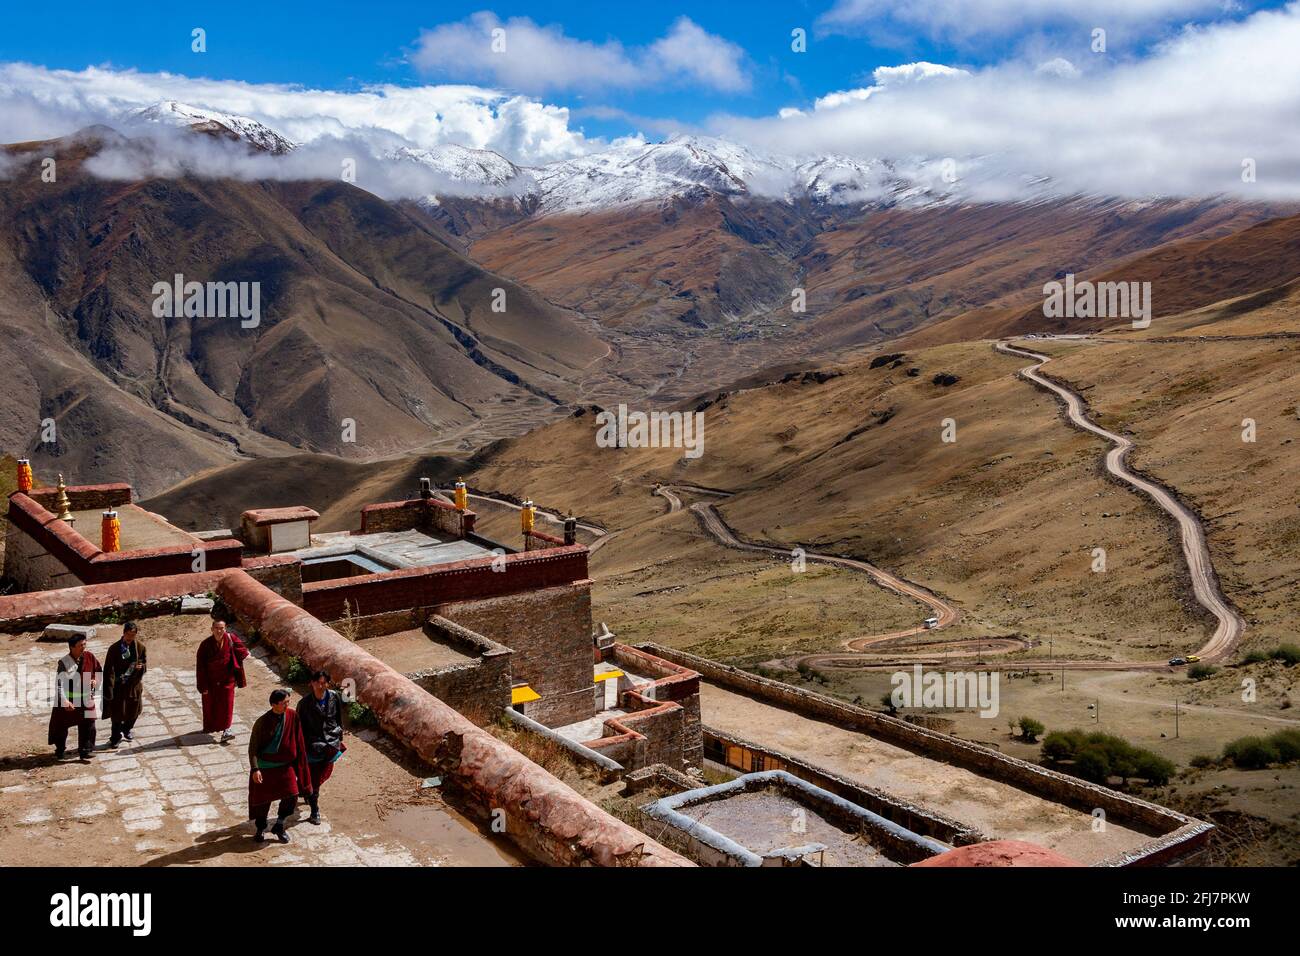 Vue sur la vallée et les montagnes de l'Himalaya depuis le monastère de Ganden au sommet du mont Wangbur dans la région du Dagze au Tibet. Banque D'Images